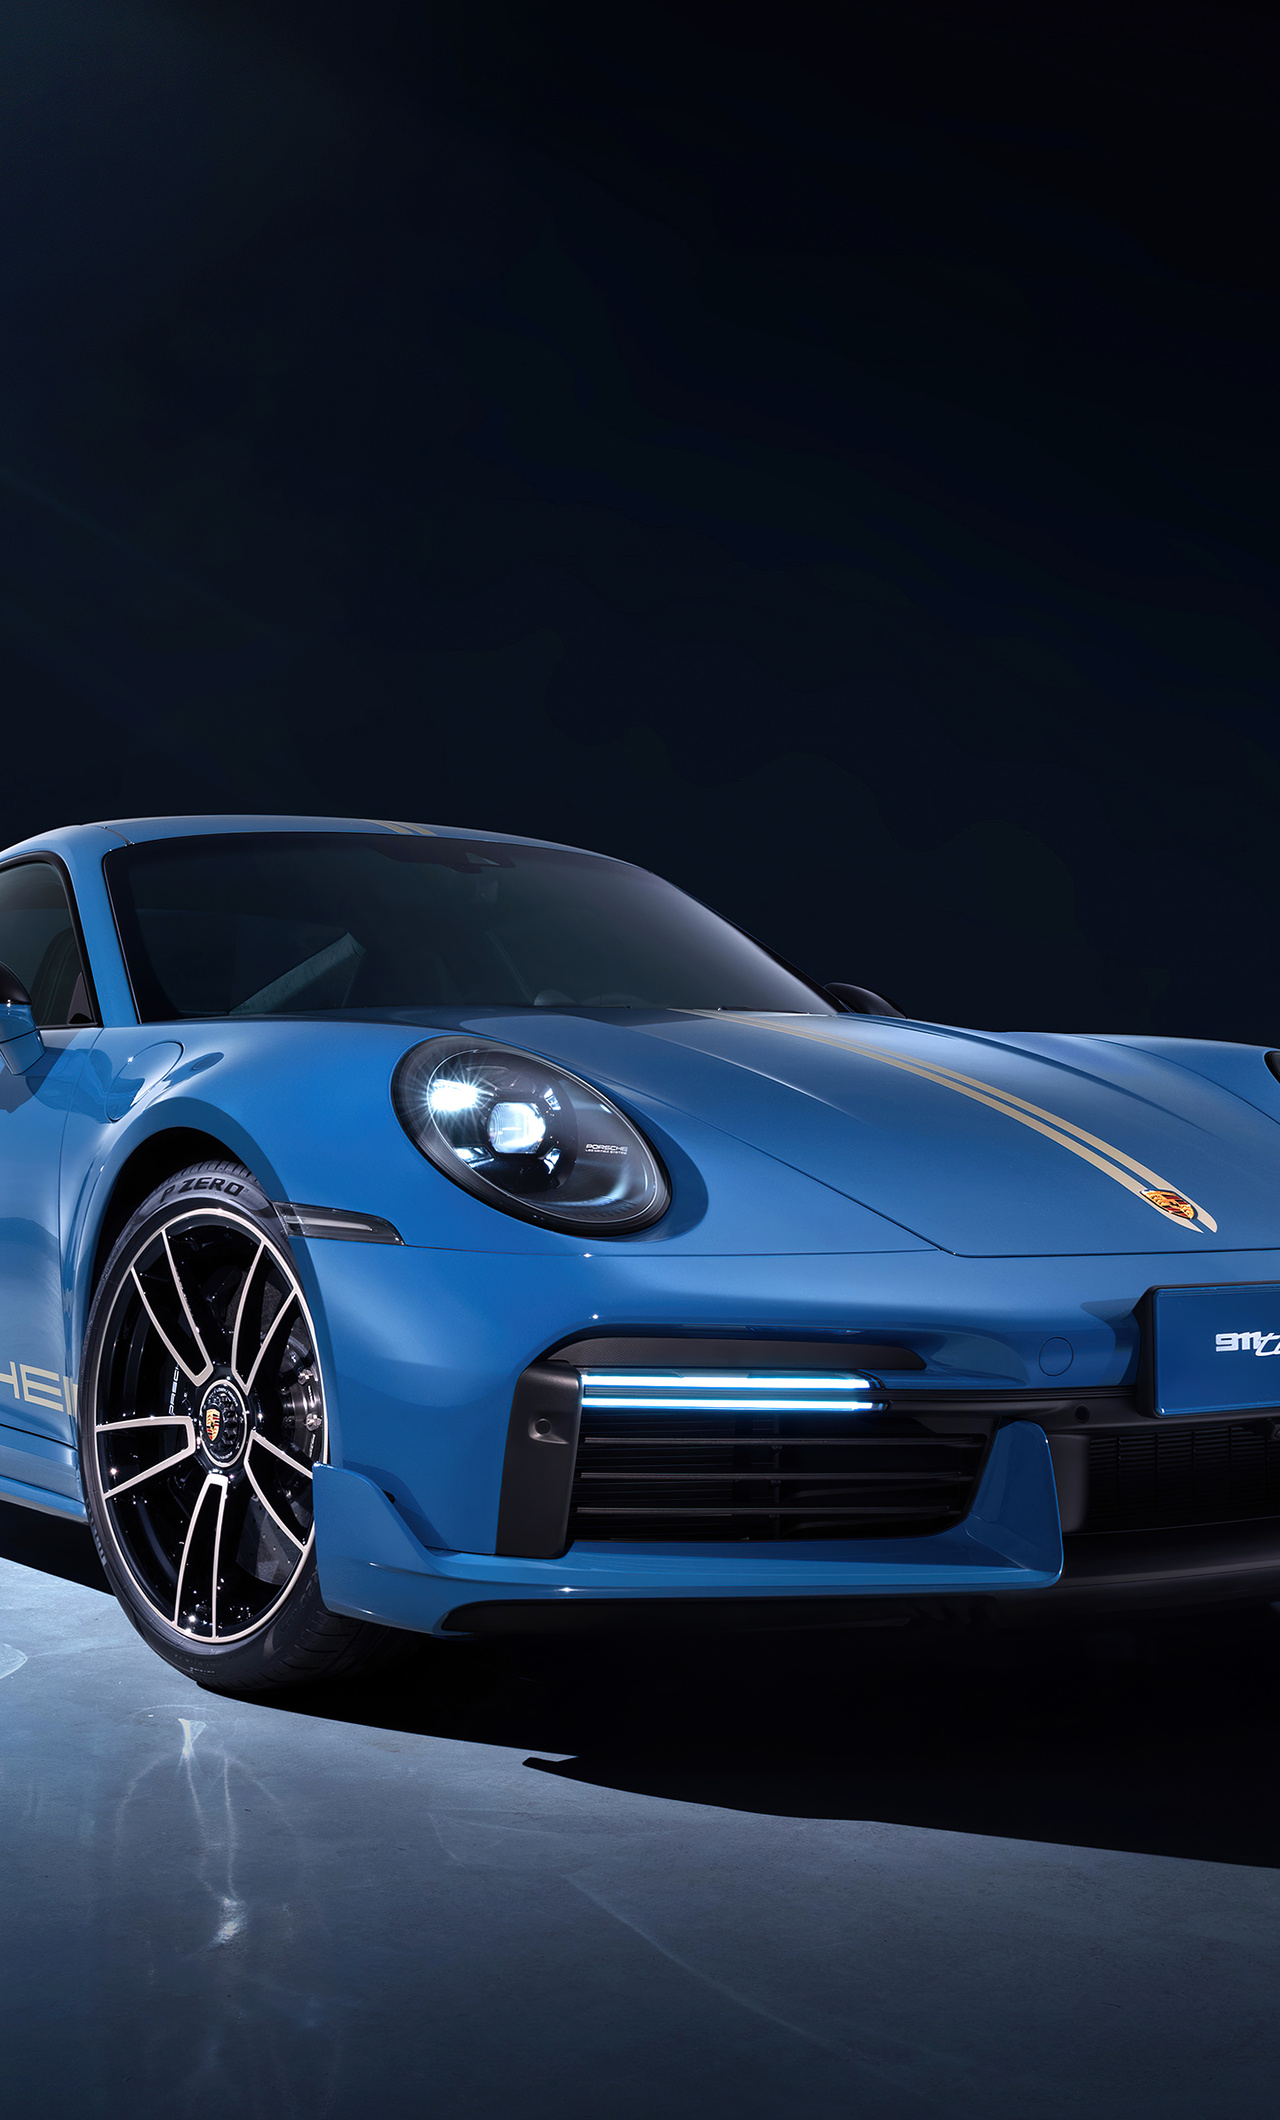 1280x2120 Porsche 911 Turbos 8k iPhone 6+ HD 4k Wallpapers, Images ...